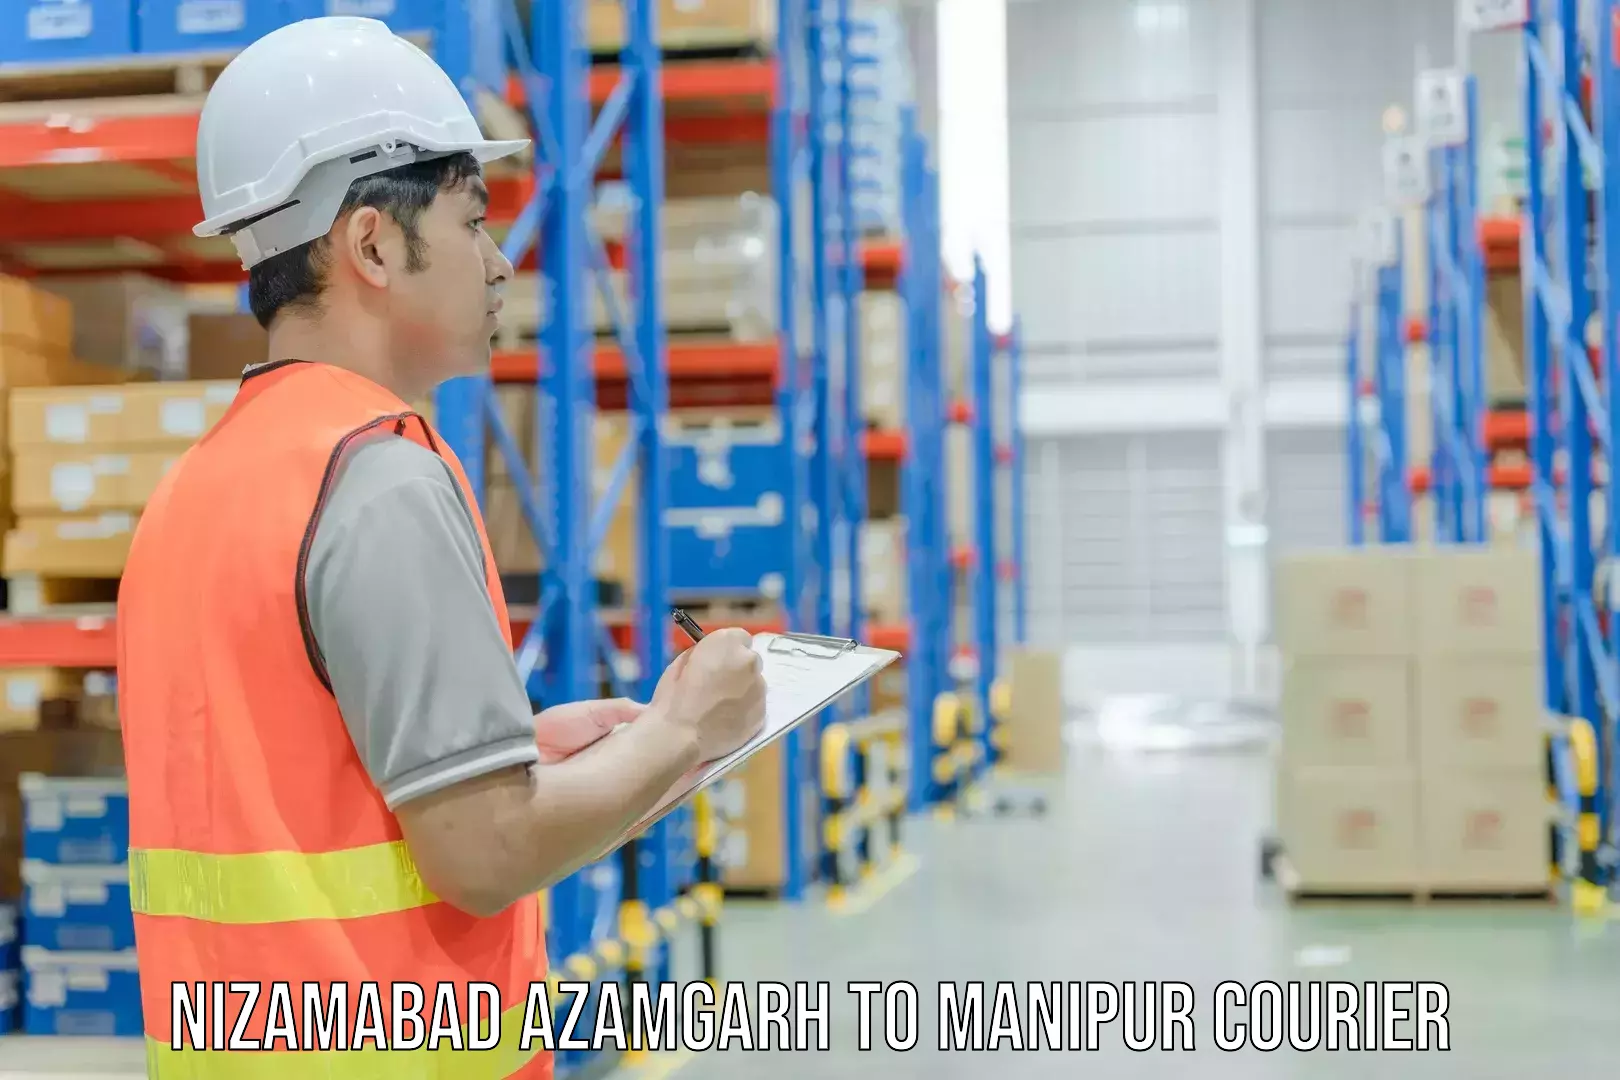 Nationwide parcel services Nizamabad Azamgarh to Kakching